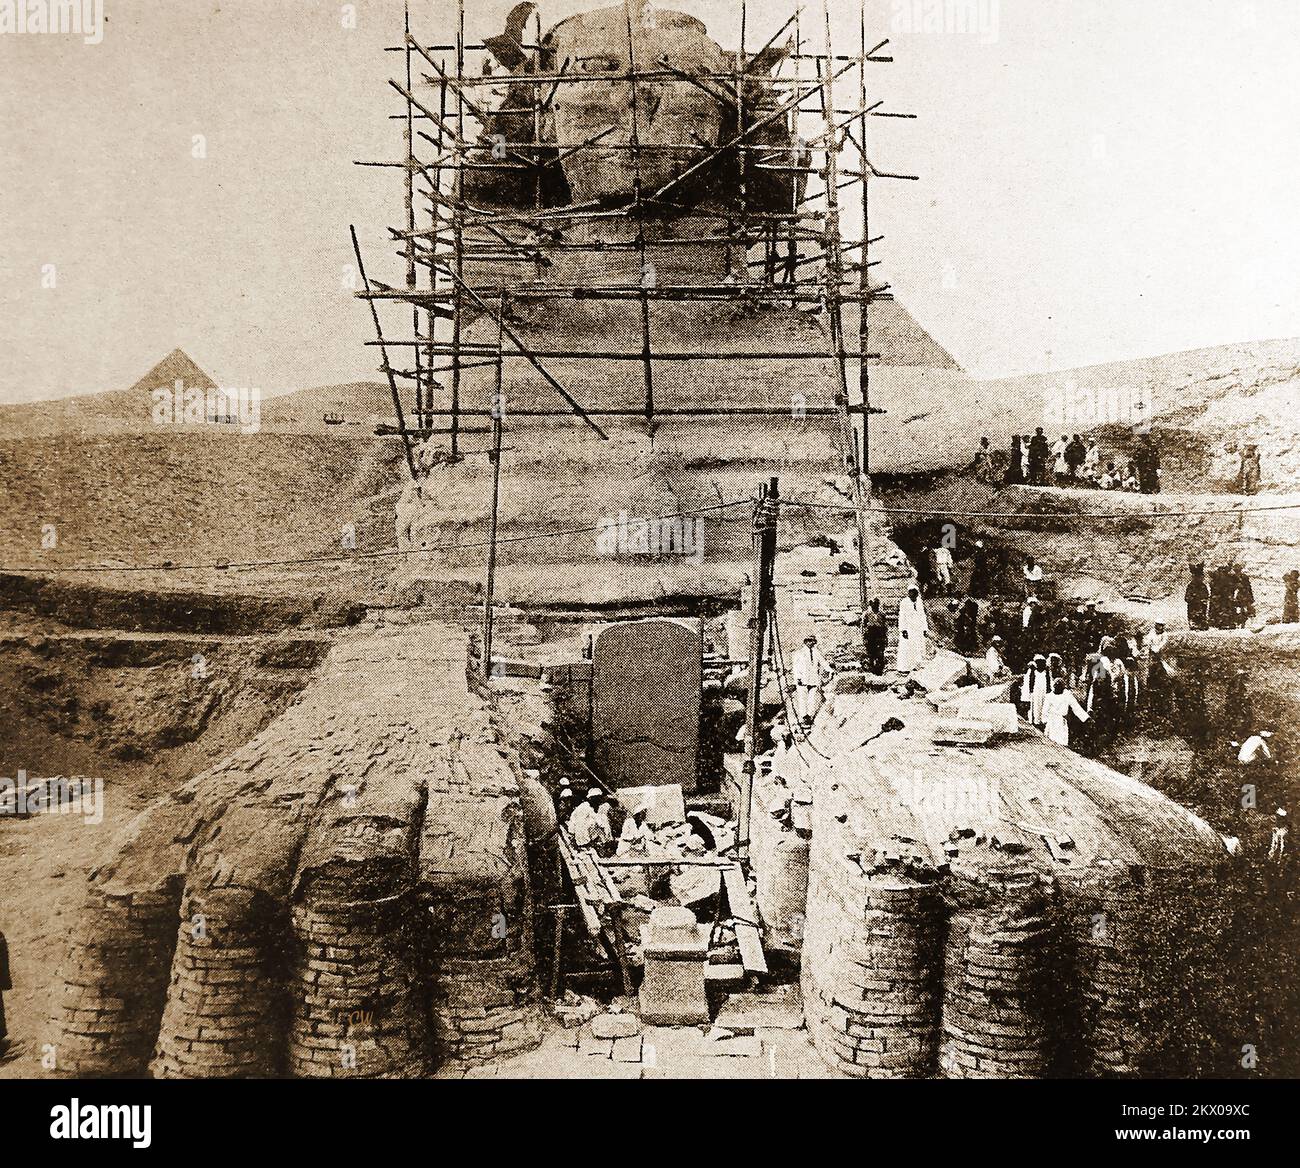 1940er Jahre – Ingenieure errichten Gerüste für Konservierungsarbeiten an der Sphinx, Ägypten. Technisch bekannt als Androsphinx (mit einem männerkopf). Es ist die größte und bekannteste Sphinx und wird oft als große Sphinx von Gizeh bezeichnet, wie sie neben der Großen Pyramide und anderen auf dem Gizeh-Plateau steht. Die Mammutstatue stellt eine Figur mit Löwenkörper und Pharaokopf dar und wird von einigen als Vertreter des pharaos Khufu alias Cheops (2589–2566 v. Chr.) angesehen. Aber das ist umstritten .. Andere glauben, dass der Kopf aus dem eines Löwen in der antiken Geschichte neu geschnitzt wurde. Ein Tempel steht zwischen seinen Beinen. Stockfoto